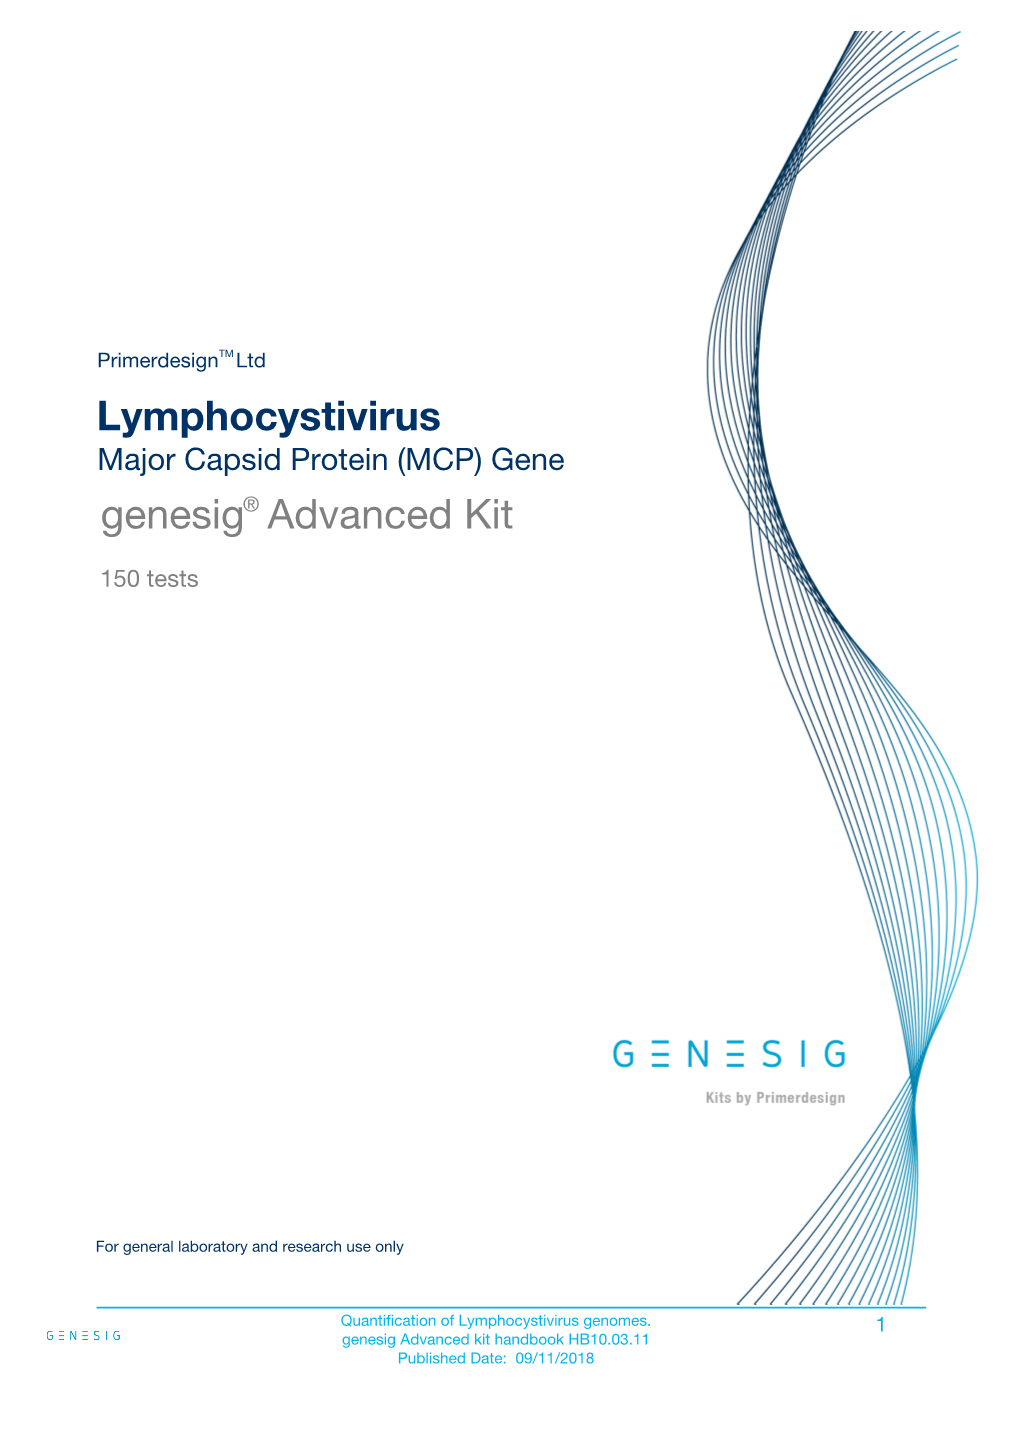 Lymphocystivirus Genesig Advanced